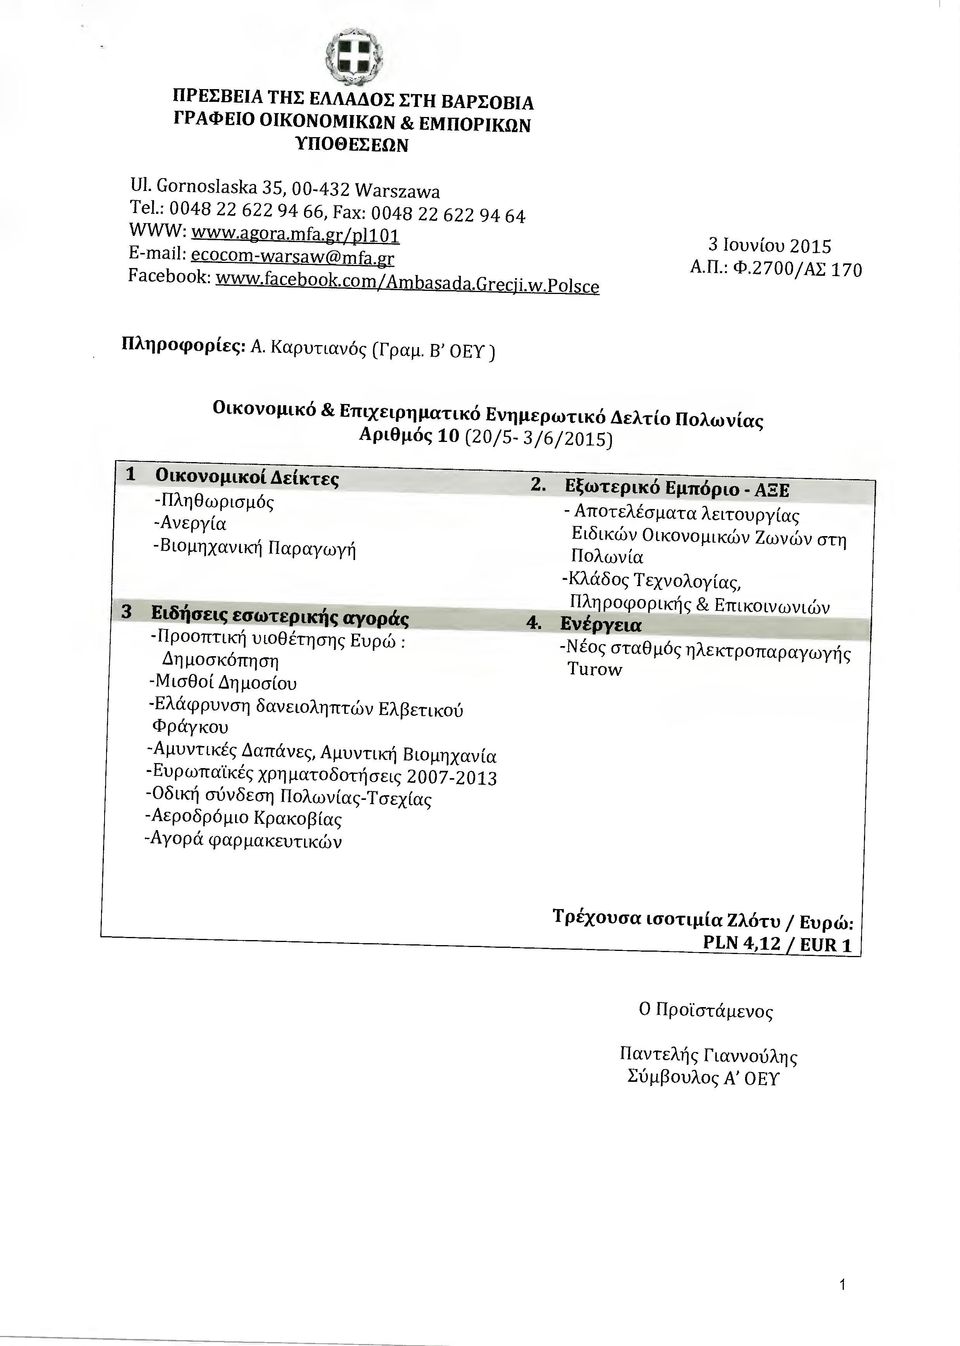 Β' ΟΕΥ ) Οικονοµικό & Επιχειρηµατικό Ενηµερωτικό ελτίο Πολωνίας Αριθµός 10 (20/5-3/6/2015) 1 Οικονοµικοί είκτες -Πληθωρισµός -Ανεργ ία -Βιοµηχανική Παραγωγή 3 Ειδήσεις εσωτερικής αγοράς -Προοπτική